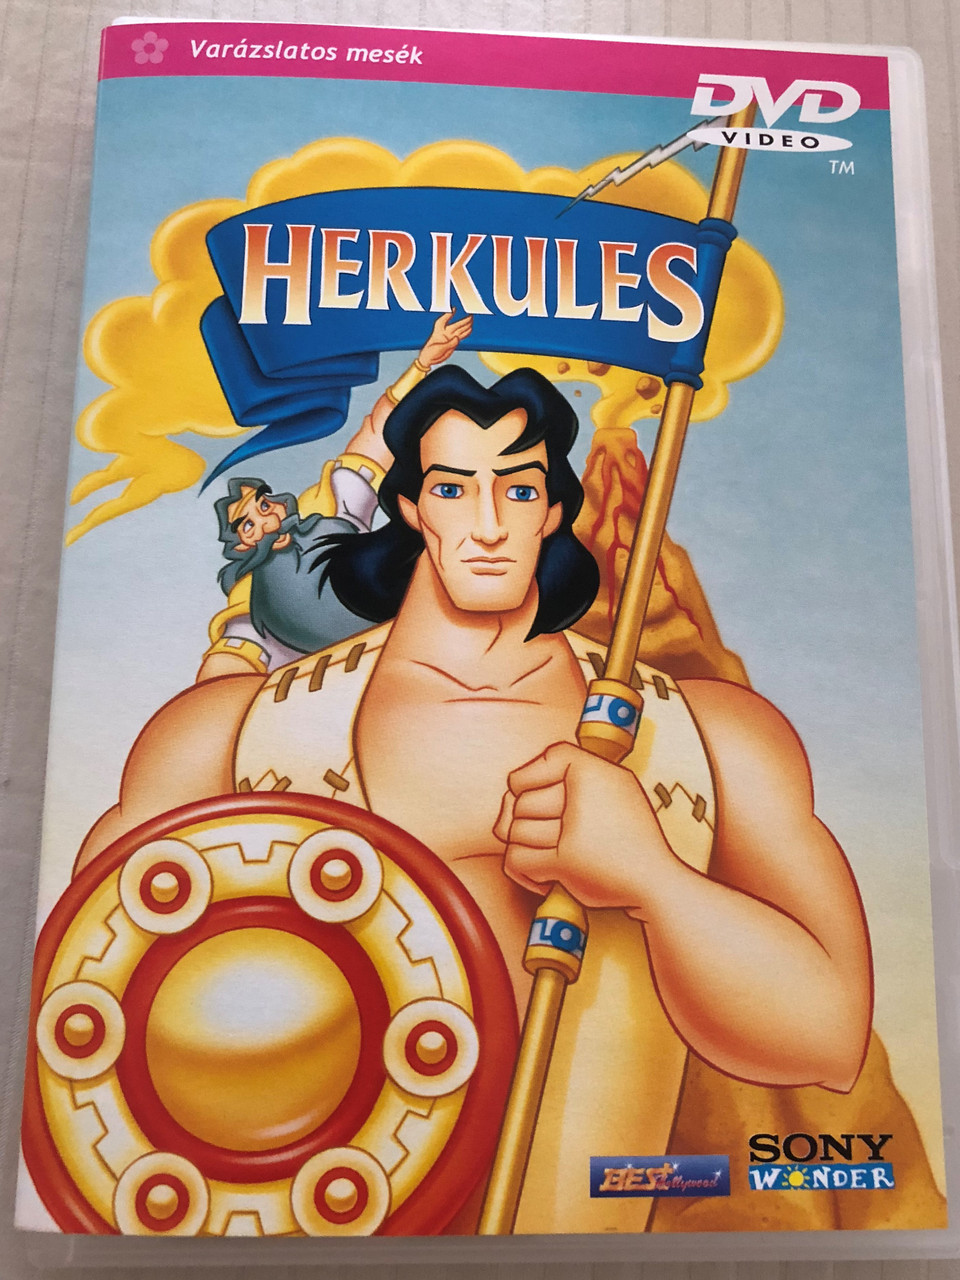 Hercules DVD 1996 Herkules / Sony Wonder / Directed by Diane Eskenazi /  Starring: Mary Kay Bergman, Cam Clarke, Jeannie Elias - Bible in My Language